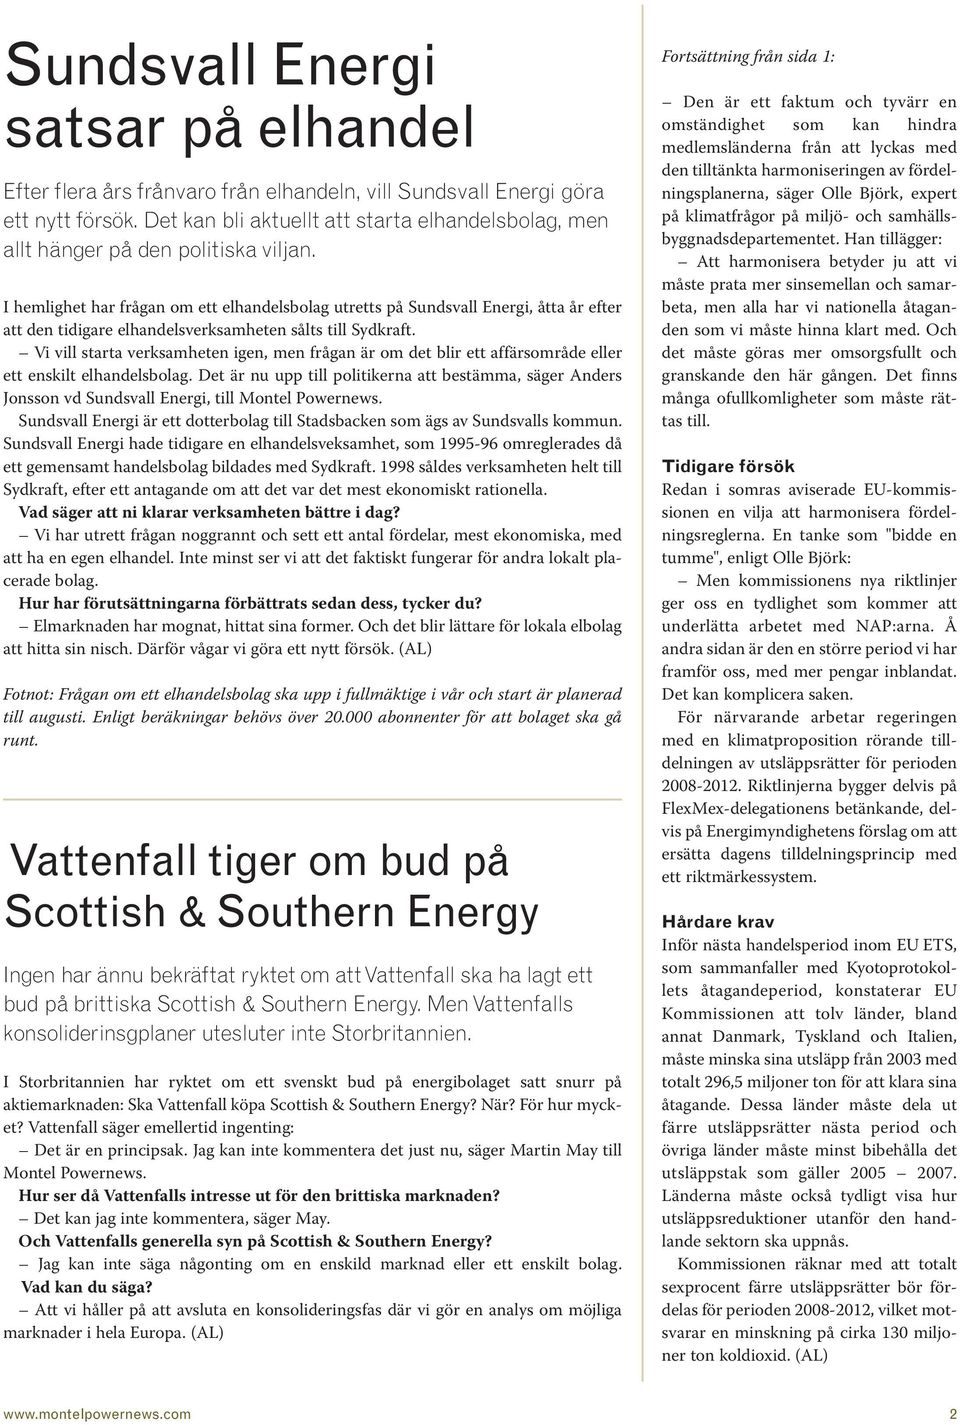 I hemlighet har frågan om ett elhandelsbolag utretts på Sundsvall Energi, åtta år efter att den tidigare elhandelsverksamheten sålts till Sydkraft.